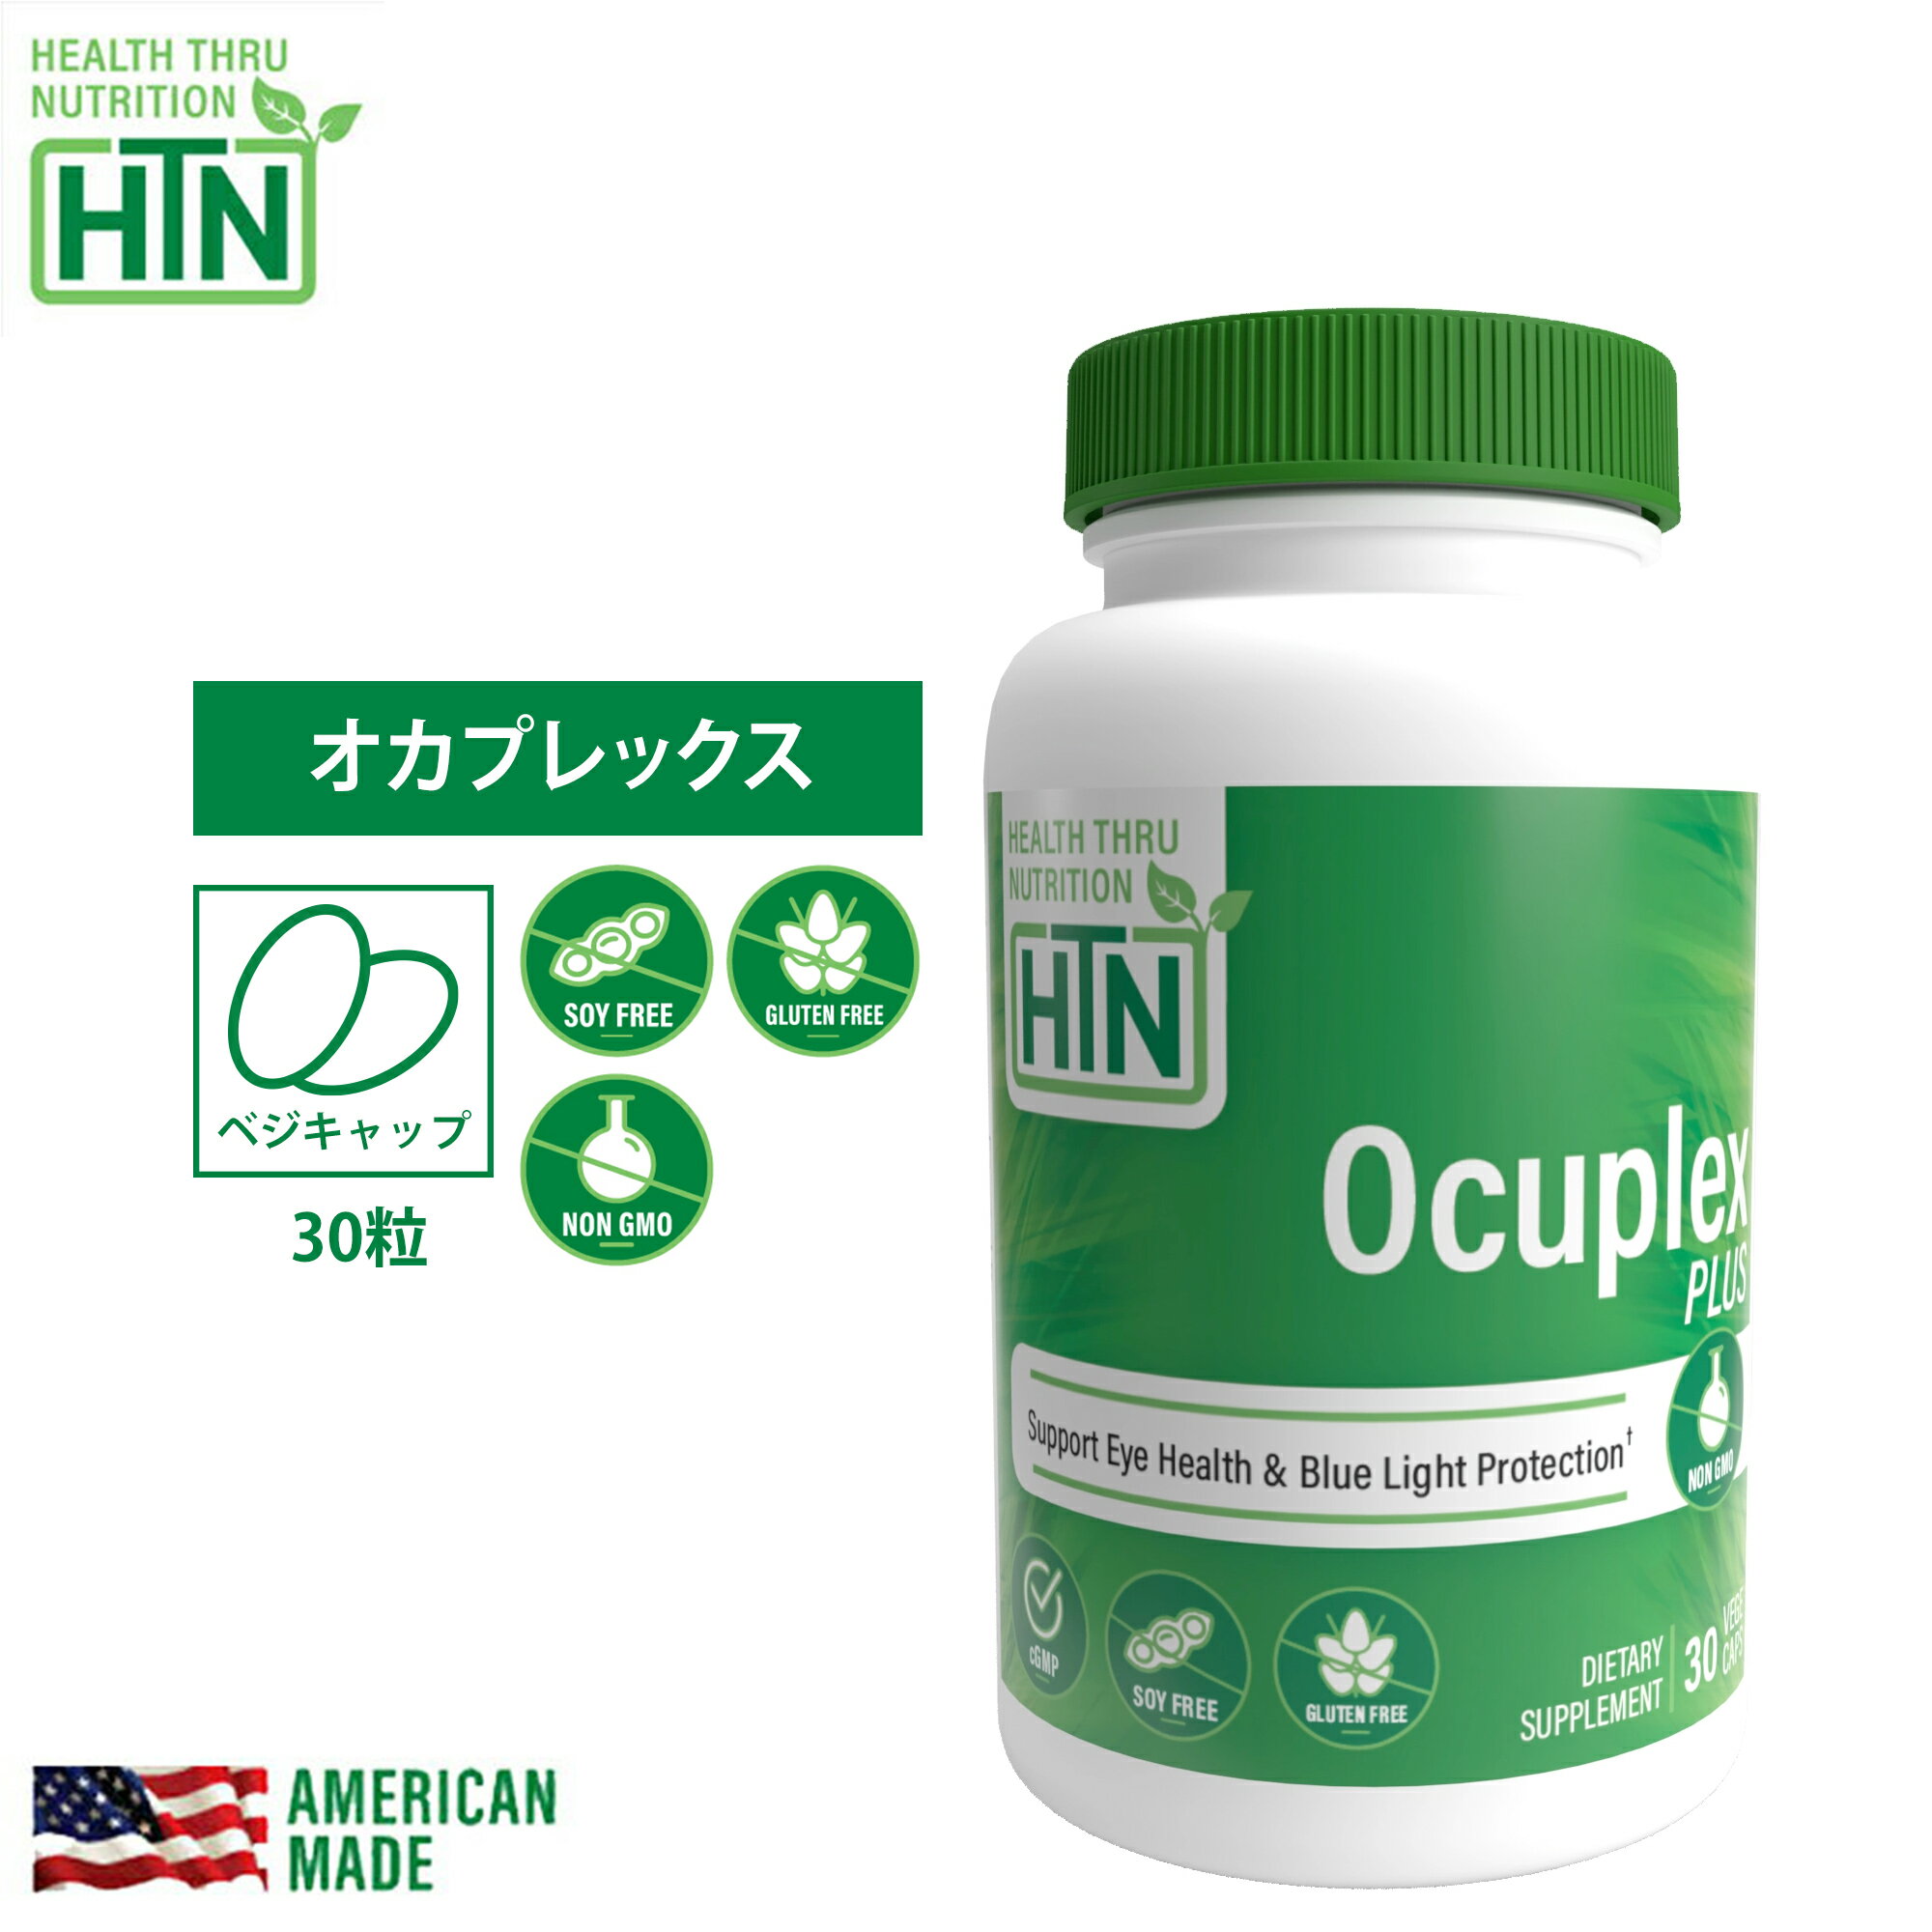 Ocuplex Plus オカプレックス プラス 30粒 アメリカ製 ソフトジェルカプセル サプリメント サプリ 健康食品 健康 米国 USA